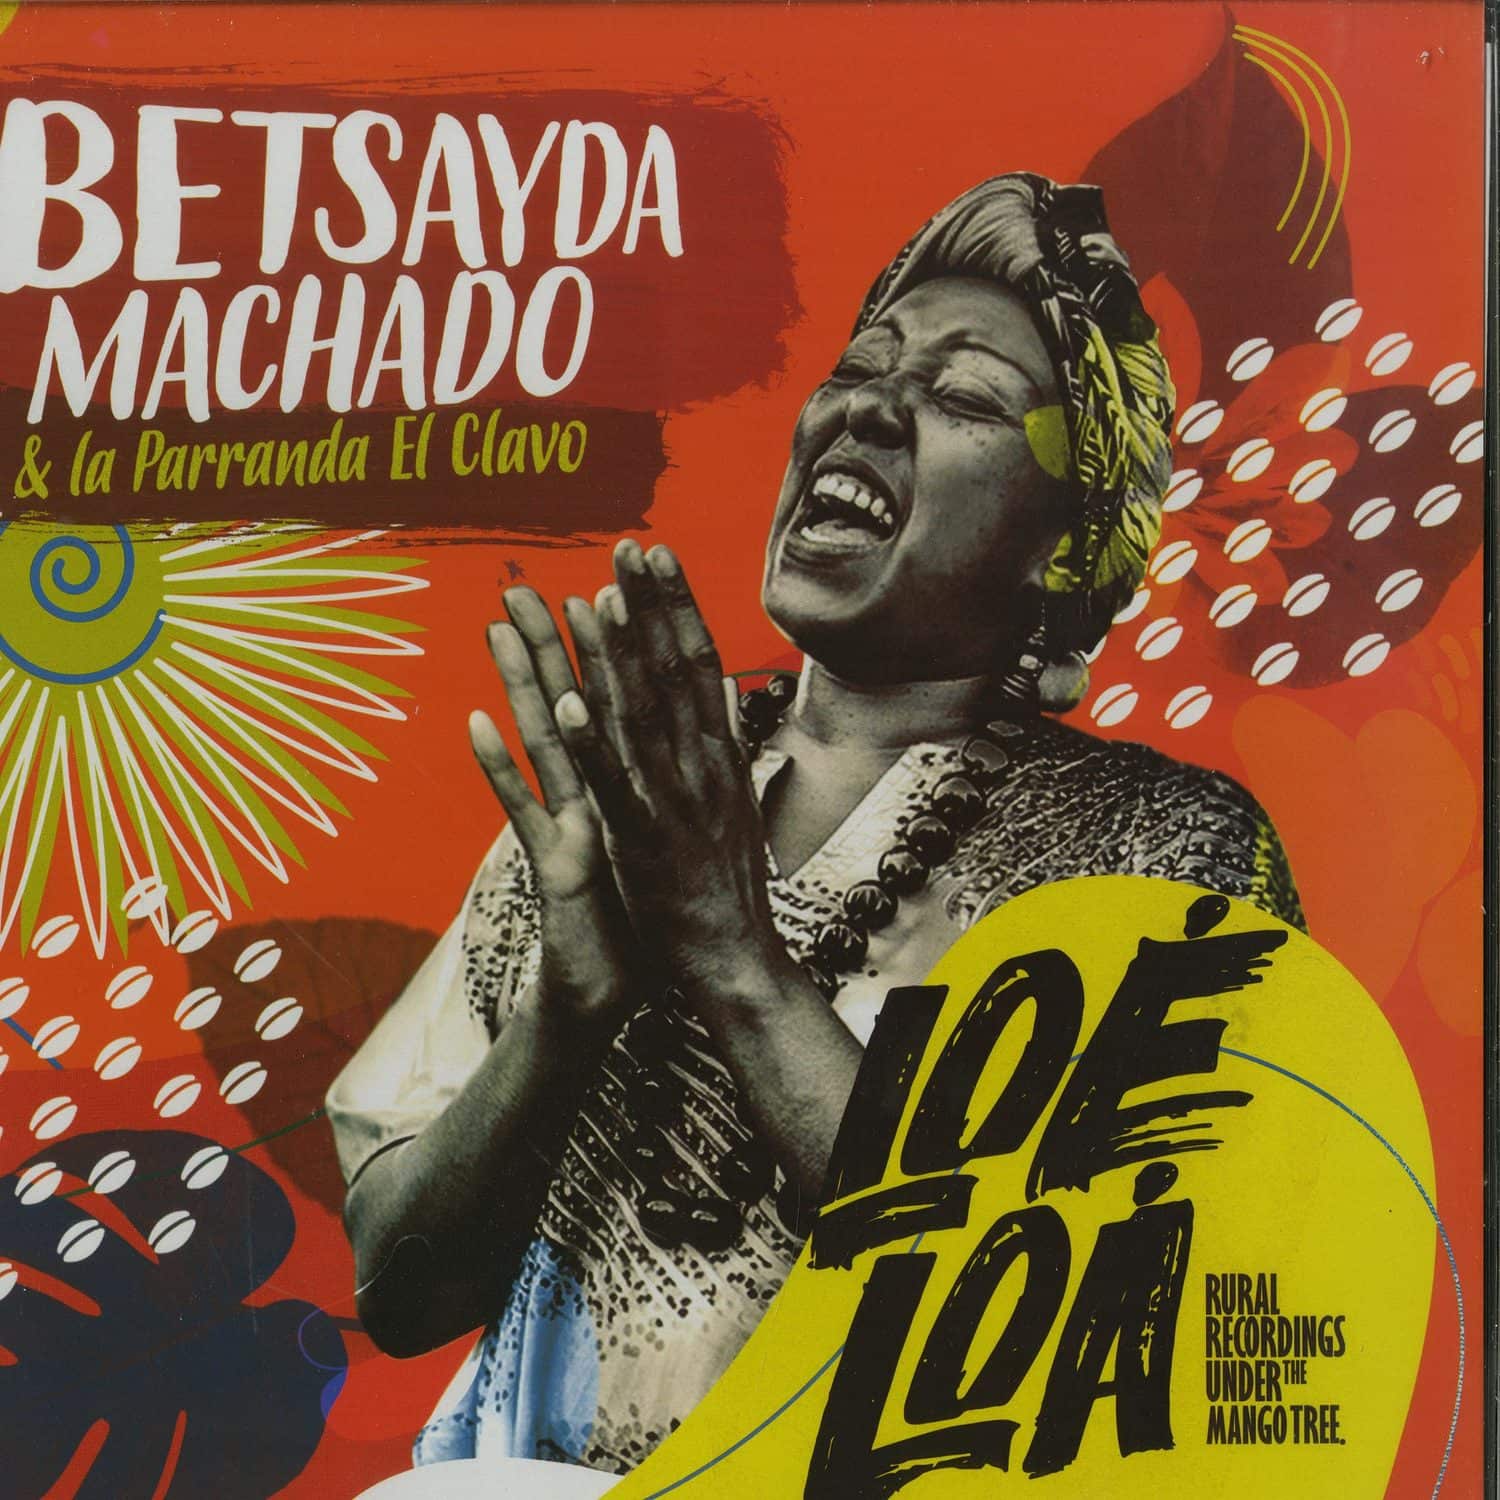 Betsayda Machado & La Parranda El Clavo - LOE LOA - RURAL RECORDINGS UNDER THE MANGO TREE 